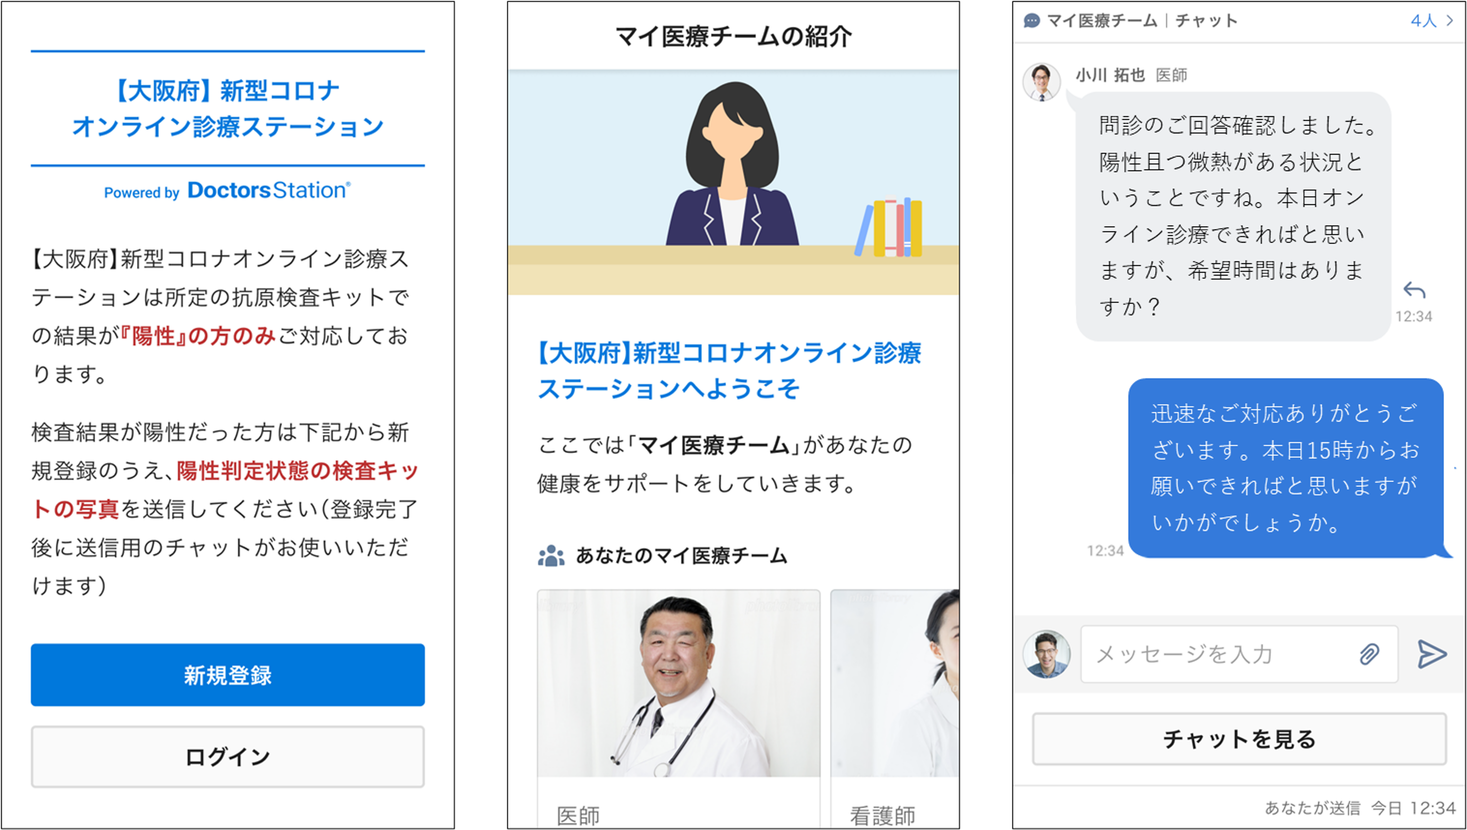 ドクターズ株式会社、大阪府へオンライン医療支援プラットフォームDoctors Station(R)を一括提供。月間150,000名規模のオンライン診療に対応